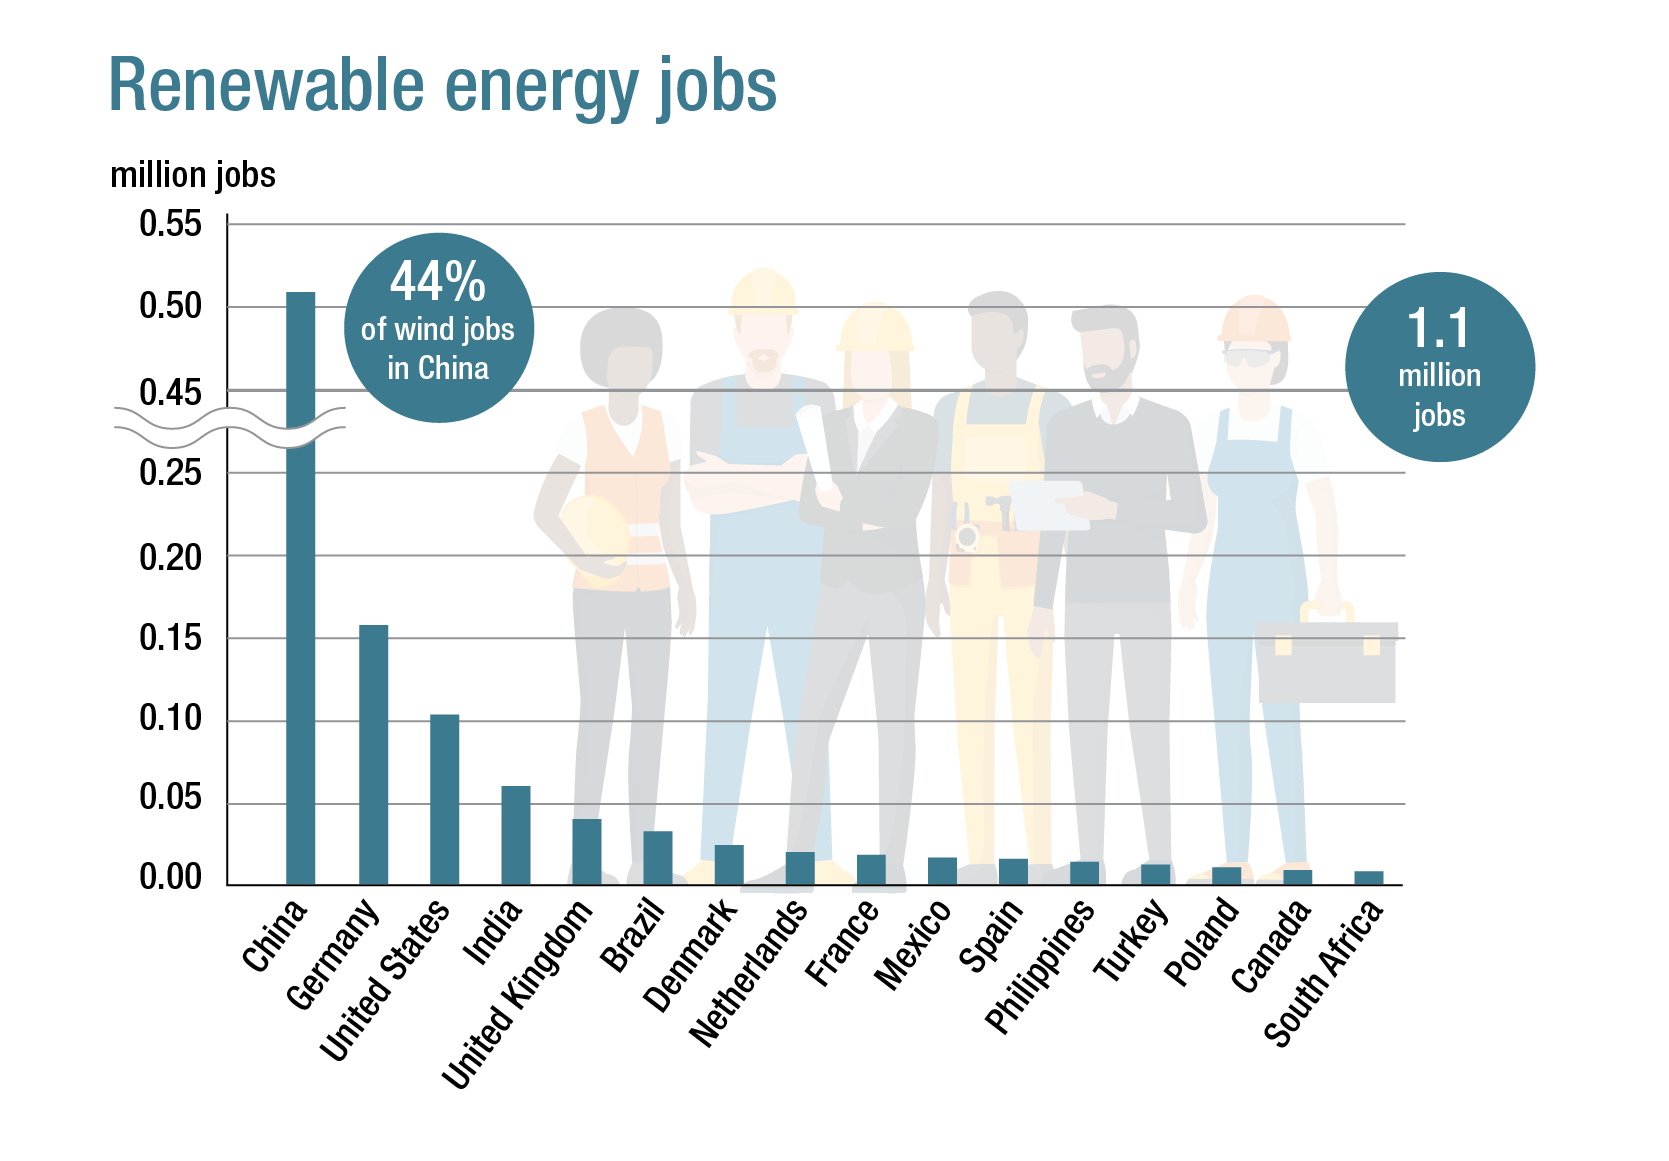 Empleos en energías renovables en todo el mundo